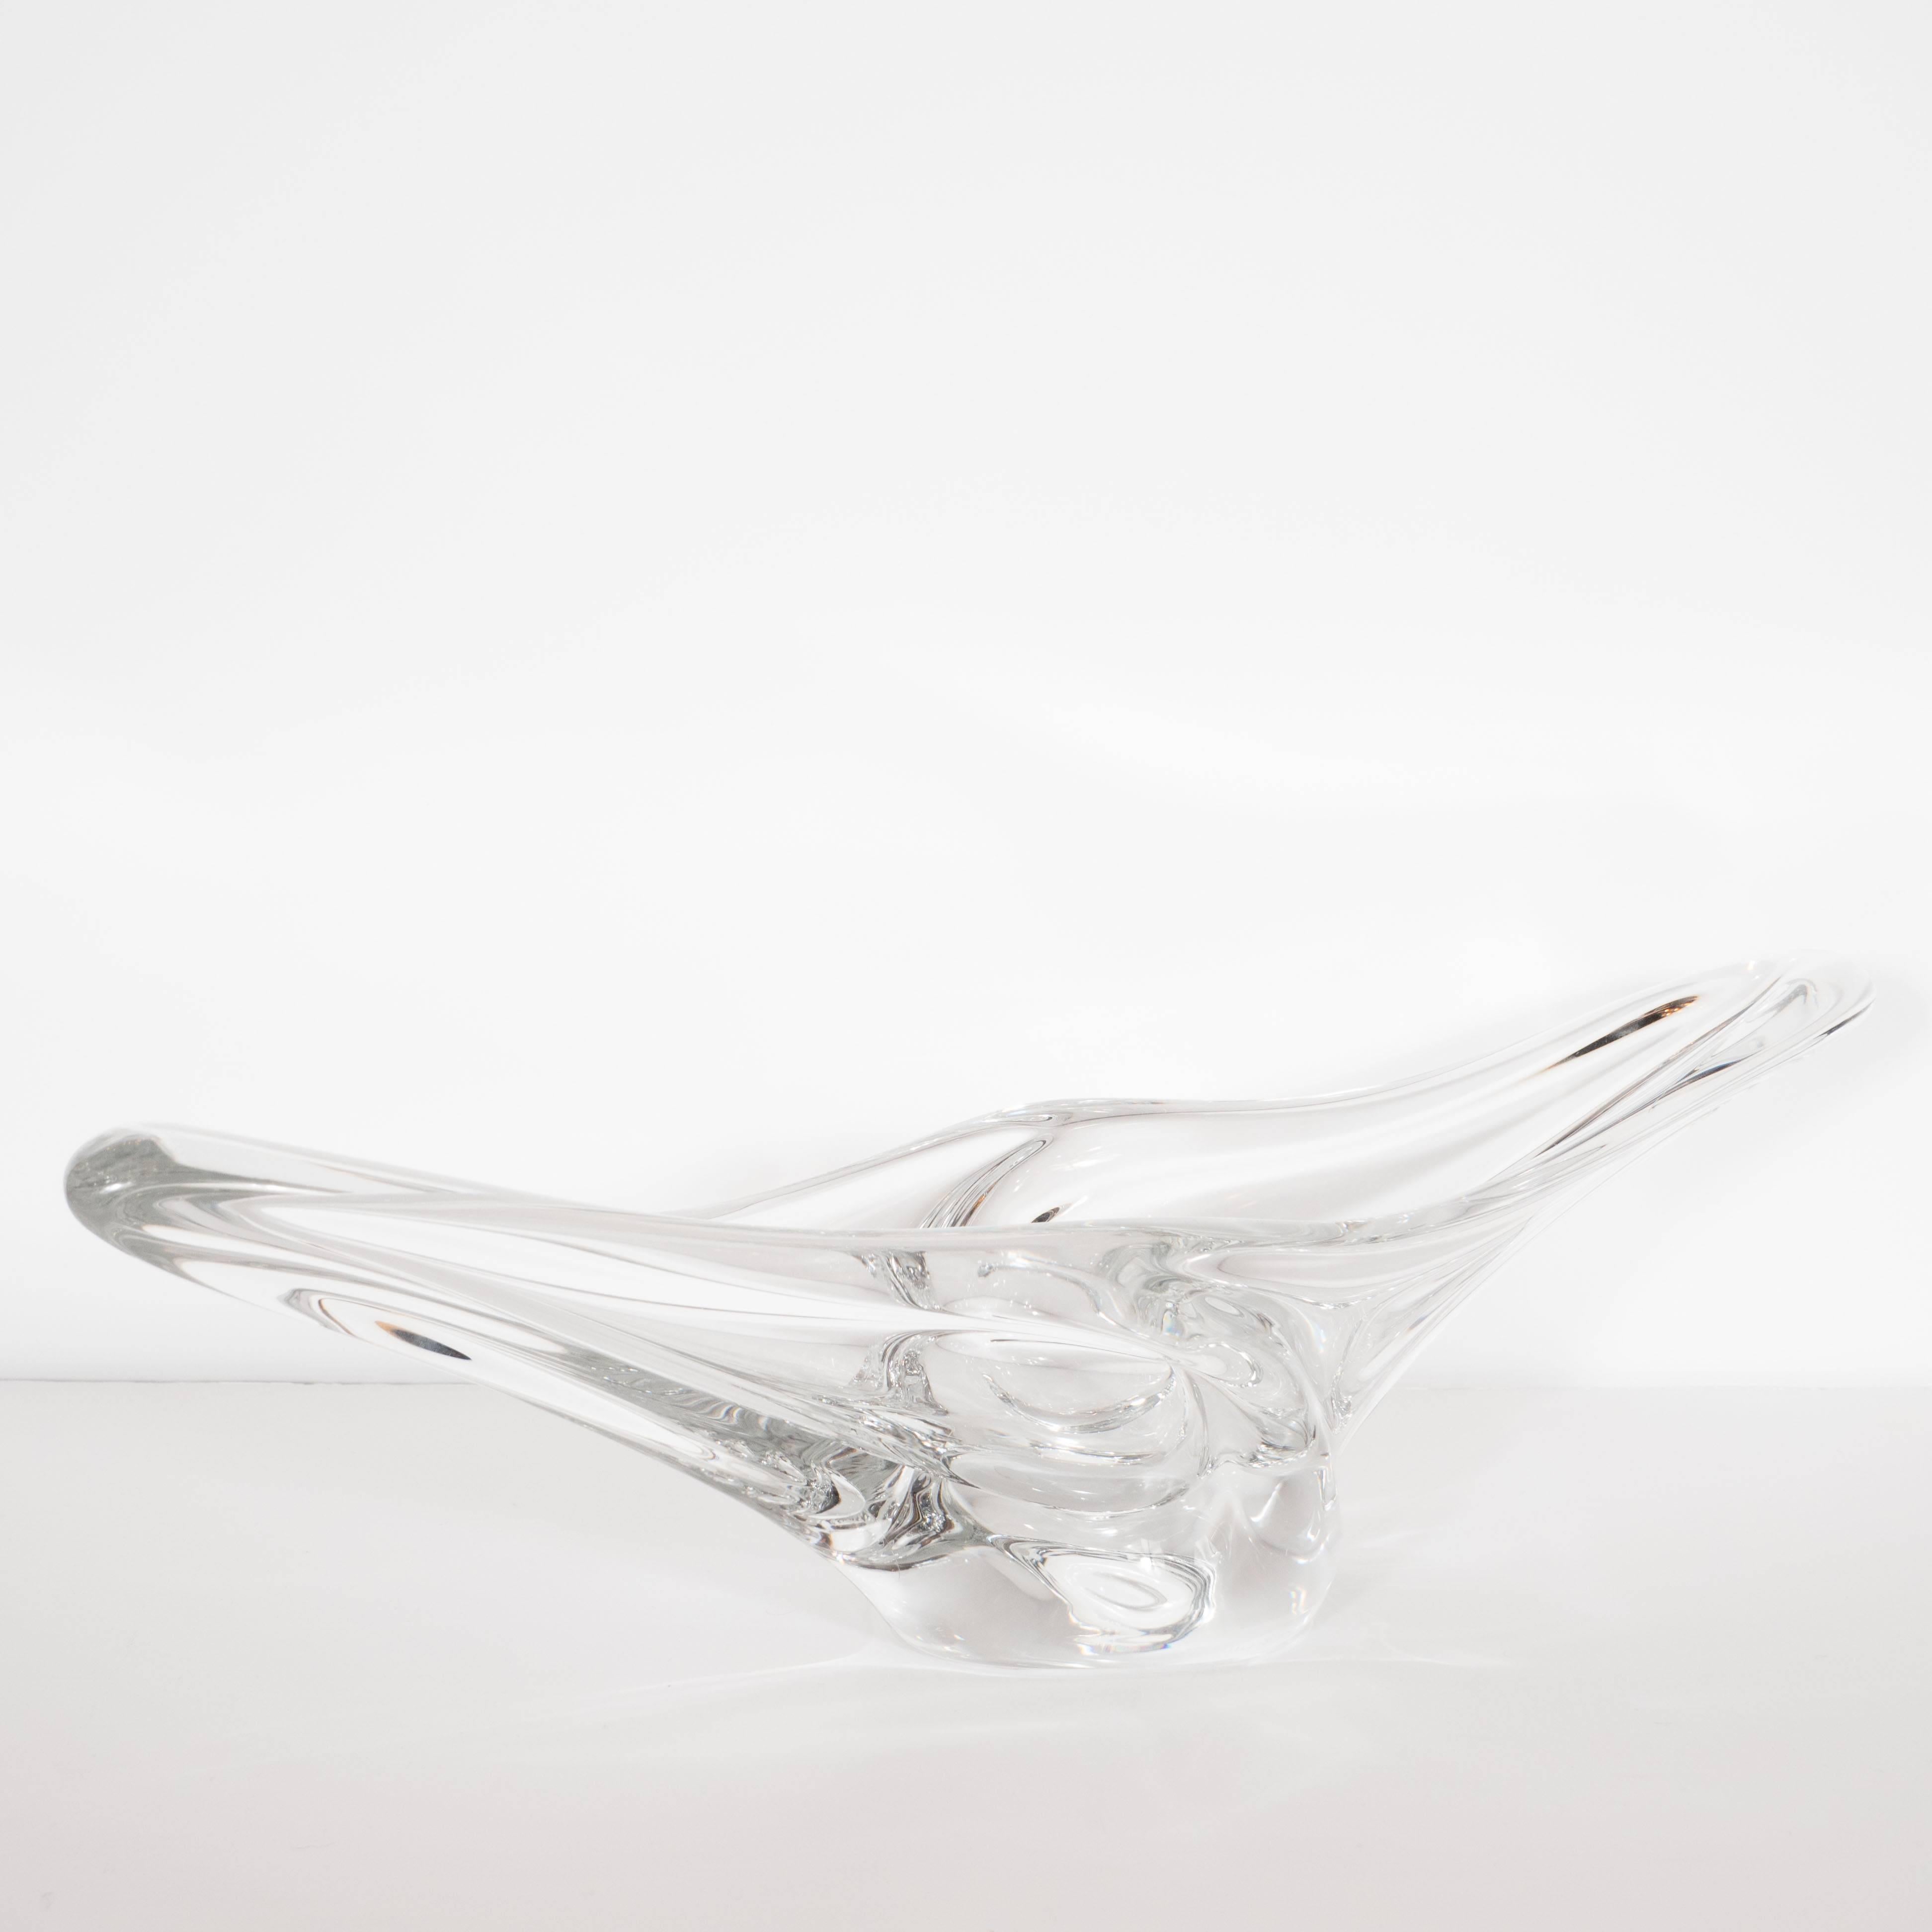 Diese raffinierte und skulpturale Schale aus durchscheinendem Glas wurde um 1950 von Daum, einem der berühmtesten Glashersteller dieser Zeit in Nancy, Frankreich, hergestellt. Daum wurde auf der Weltausstellung 1900 mit einem Grand Prix für seine